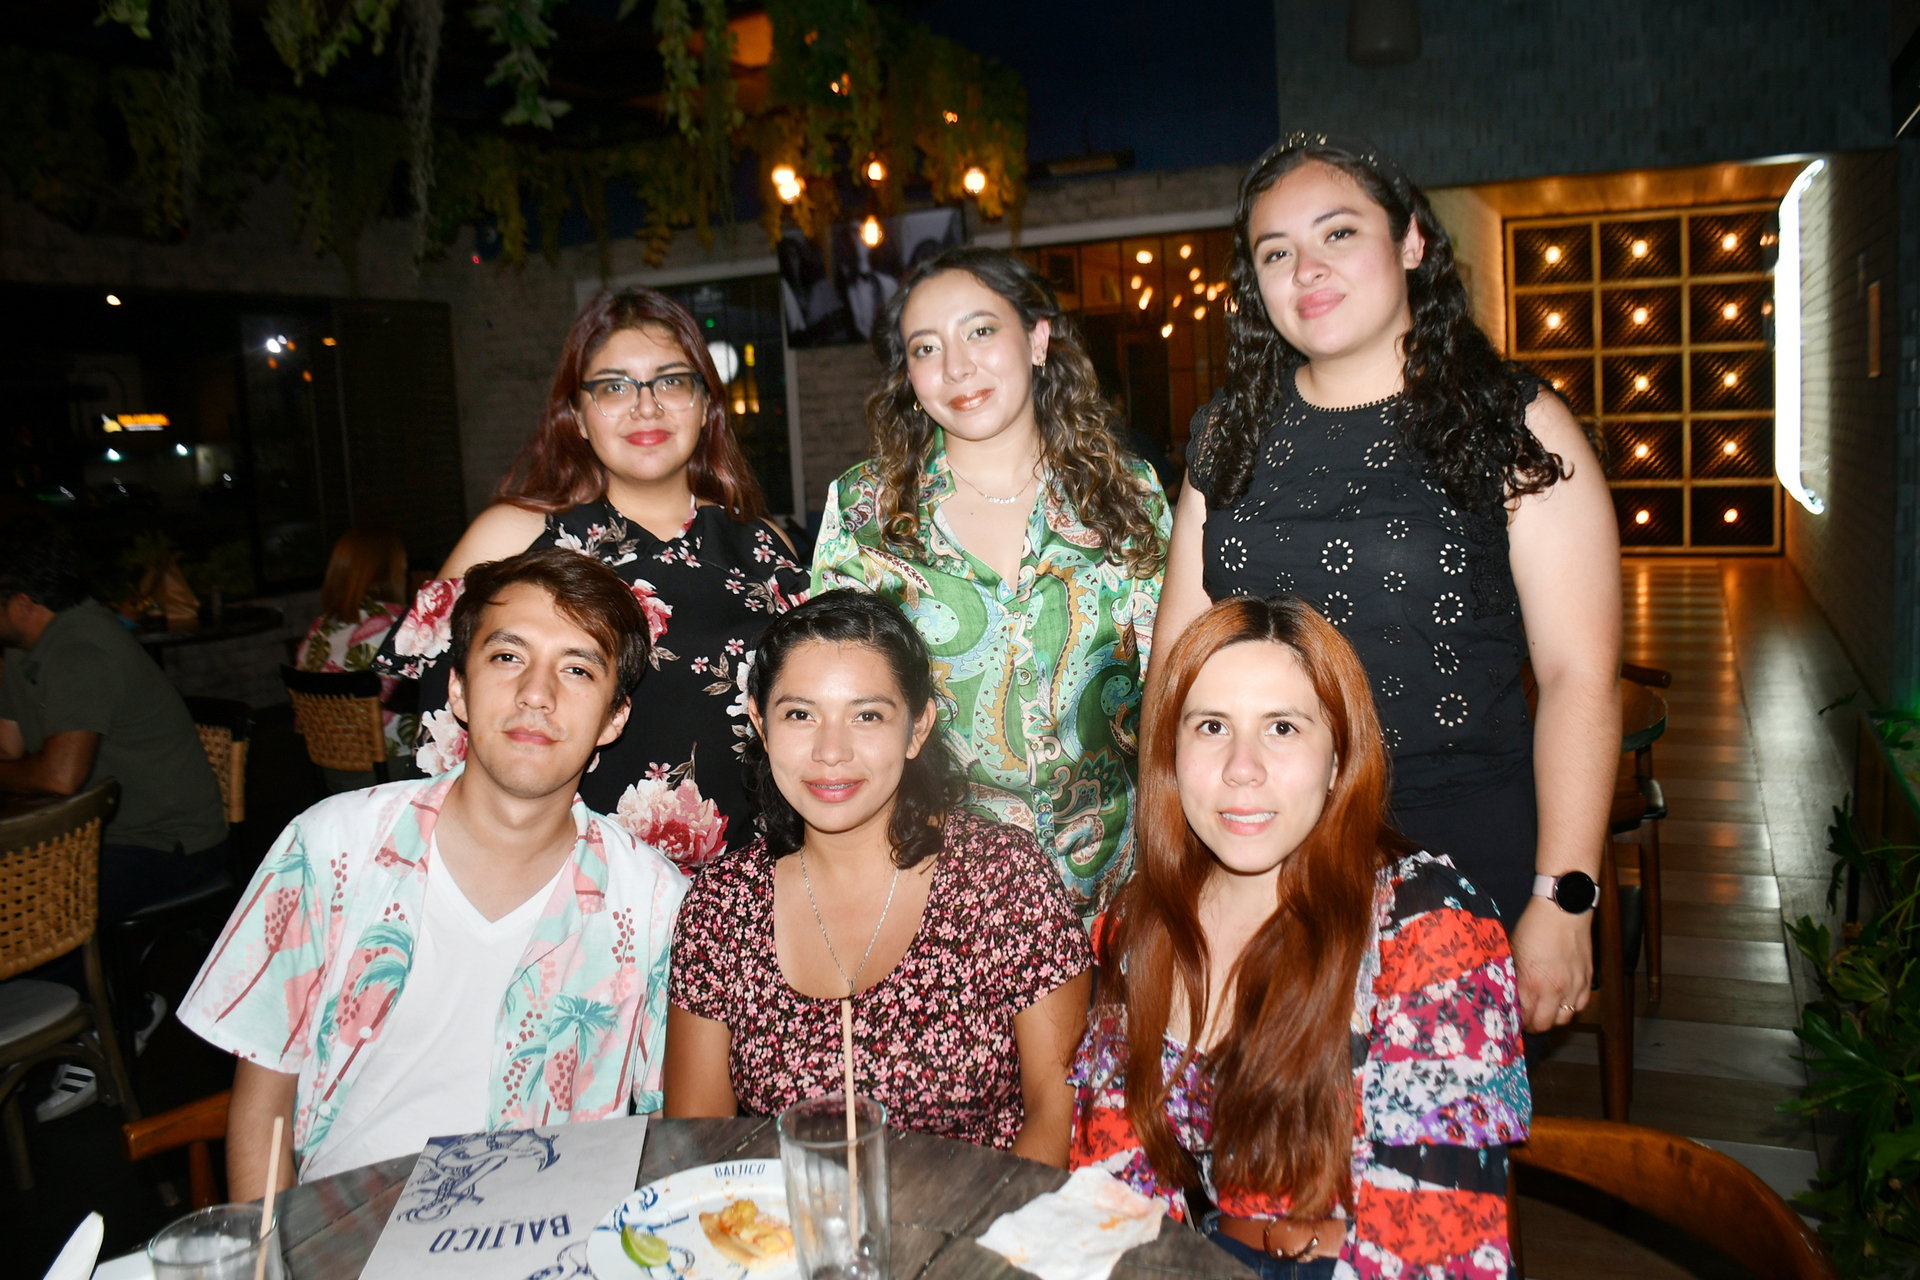 Festejando cumpleaños de la señorita María Valdez acompañada de grupo de amigos (FERNANDO COMPEÁN)
